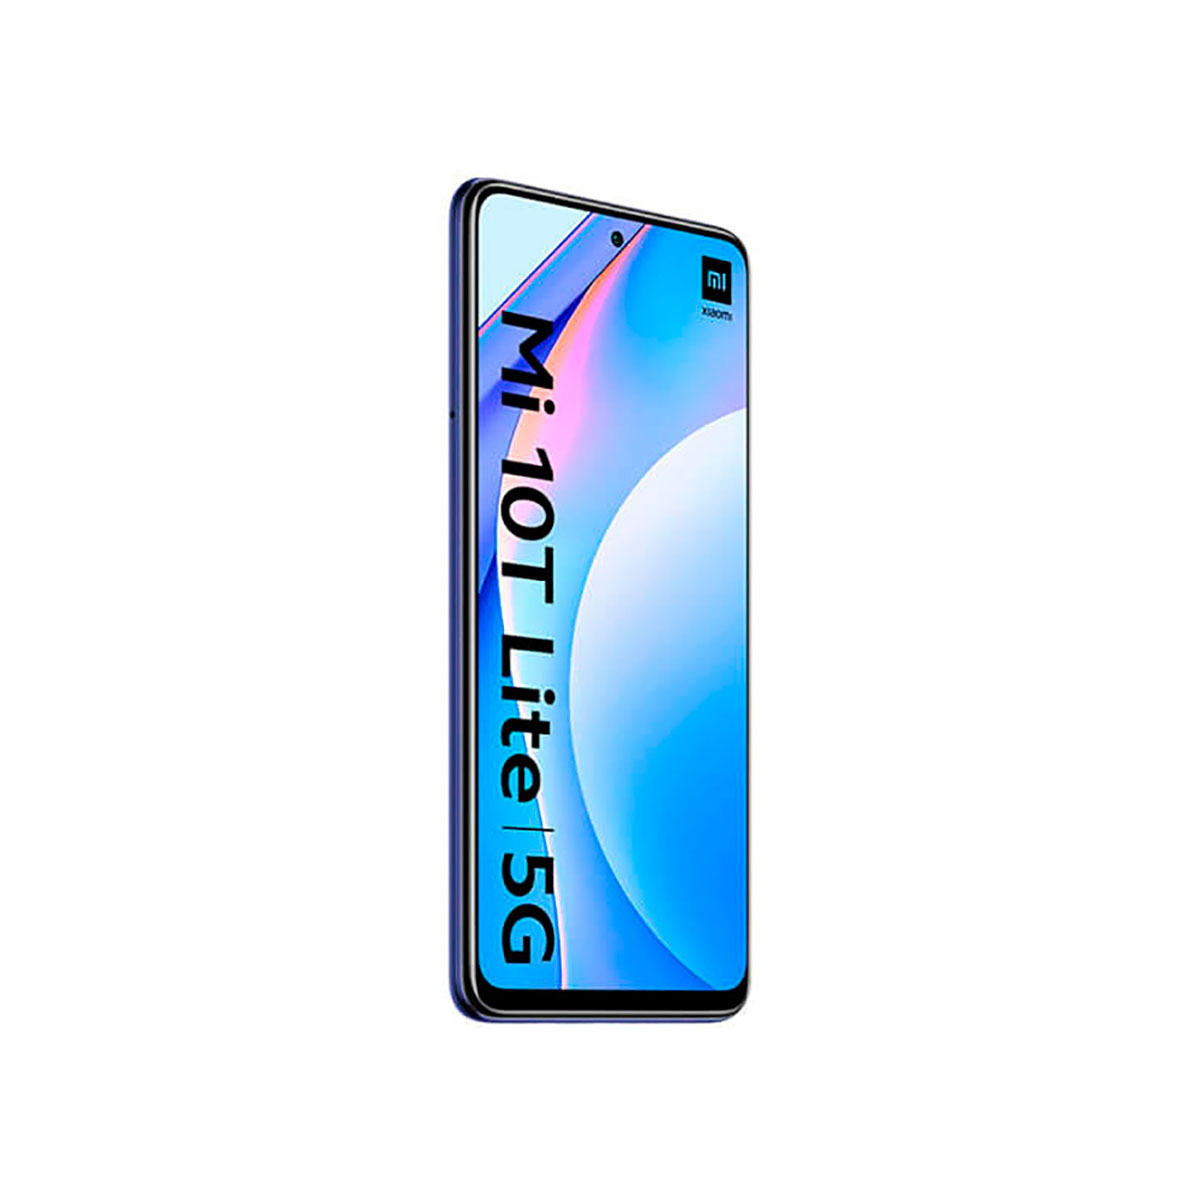 XIAOMI MI 10T LITE Atlantic Blue 128GB+6GB GB BLUE SIM Dual 128